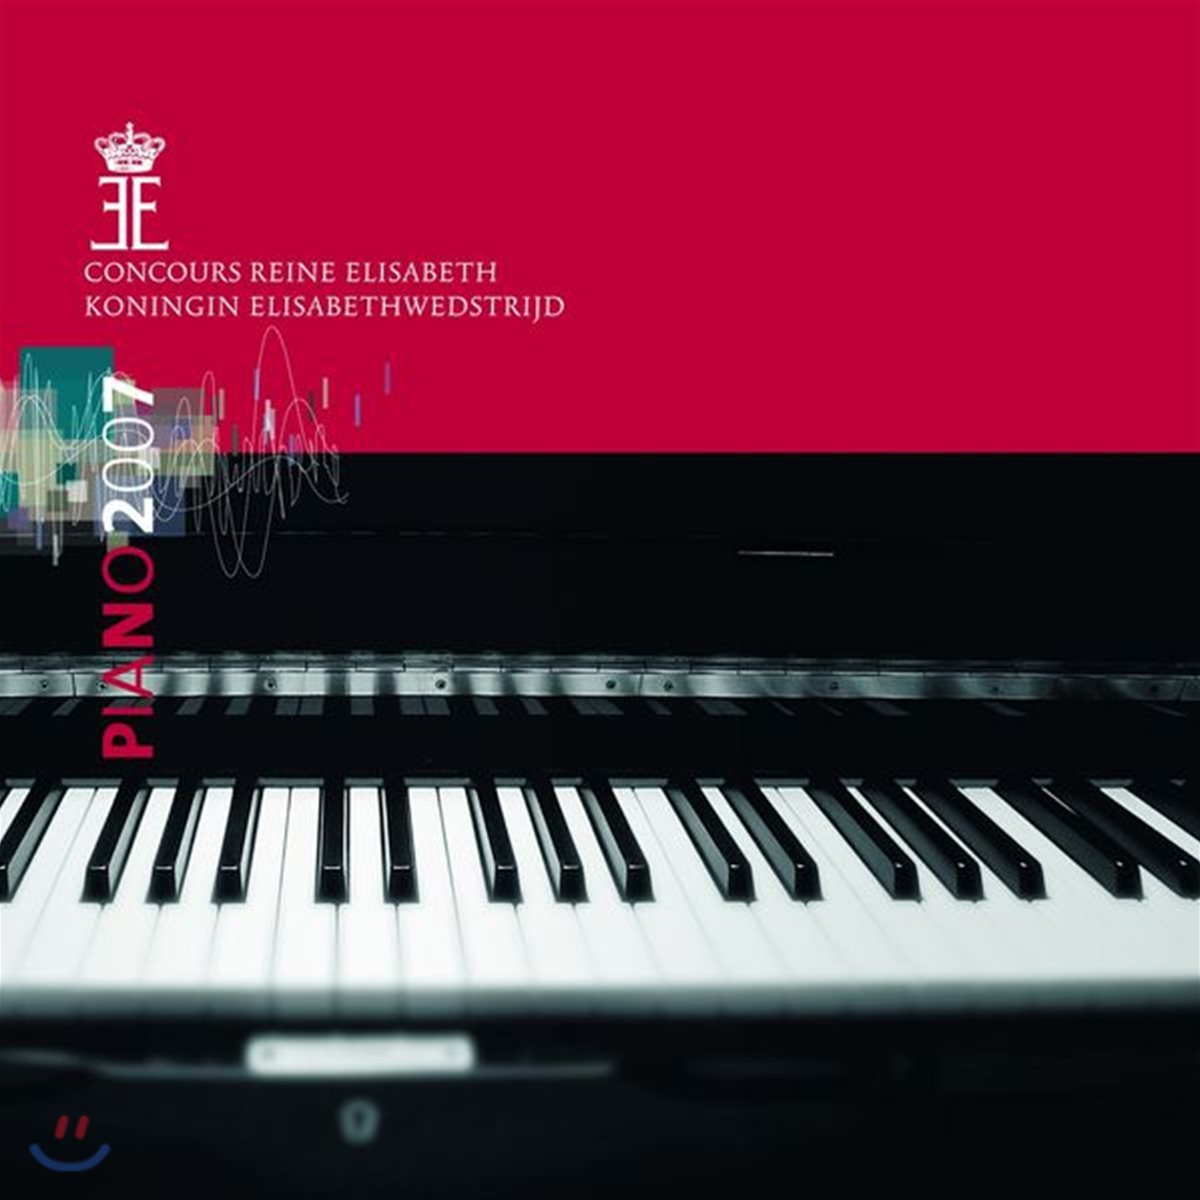 2007 퀸 엘리자베스 콩쿠르 실황 앨범 - 피아노 (Piano 2007 - Queen Elisabeth Competiton)